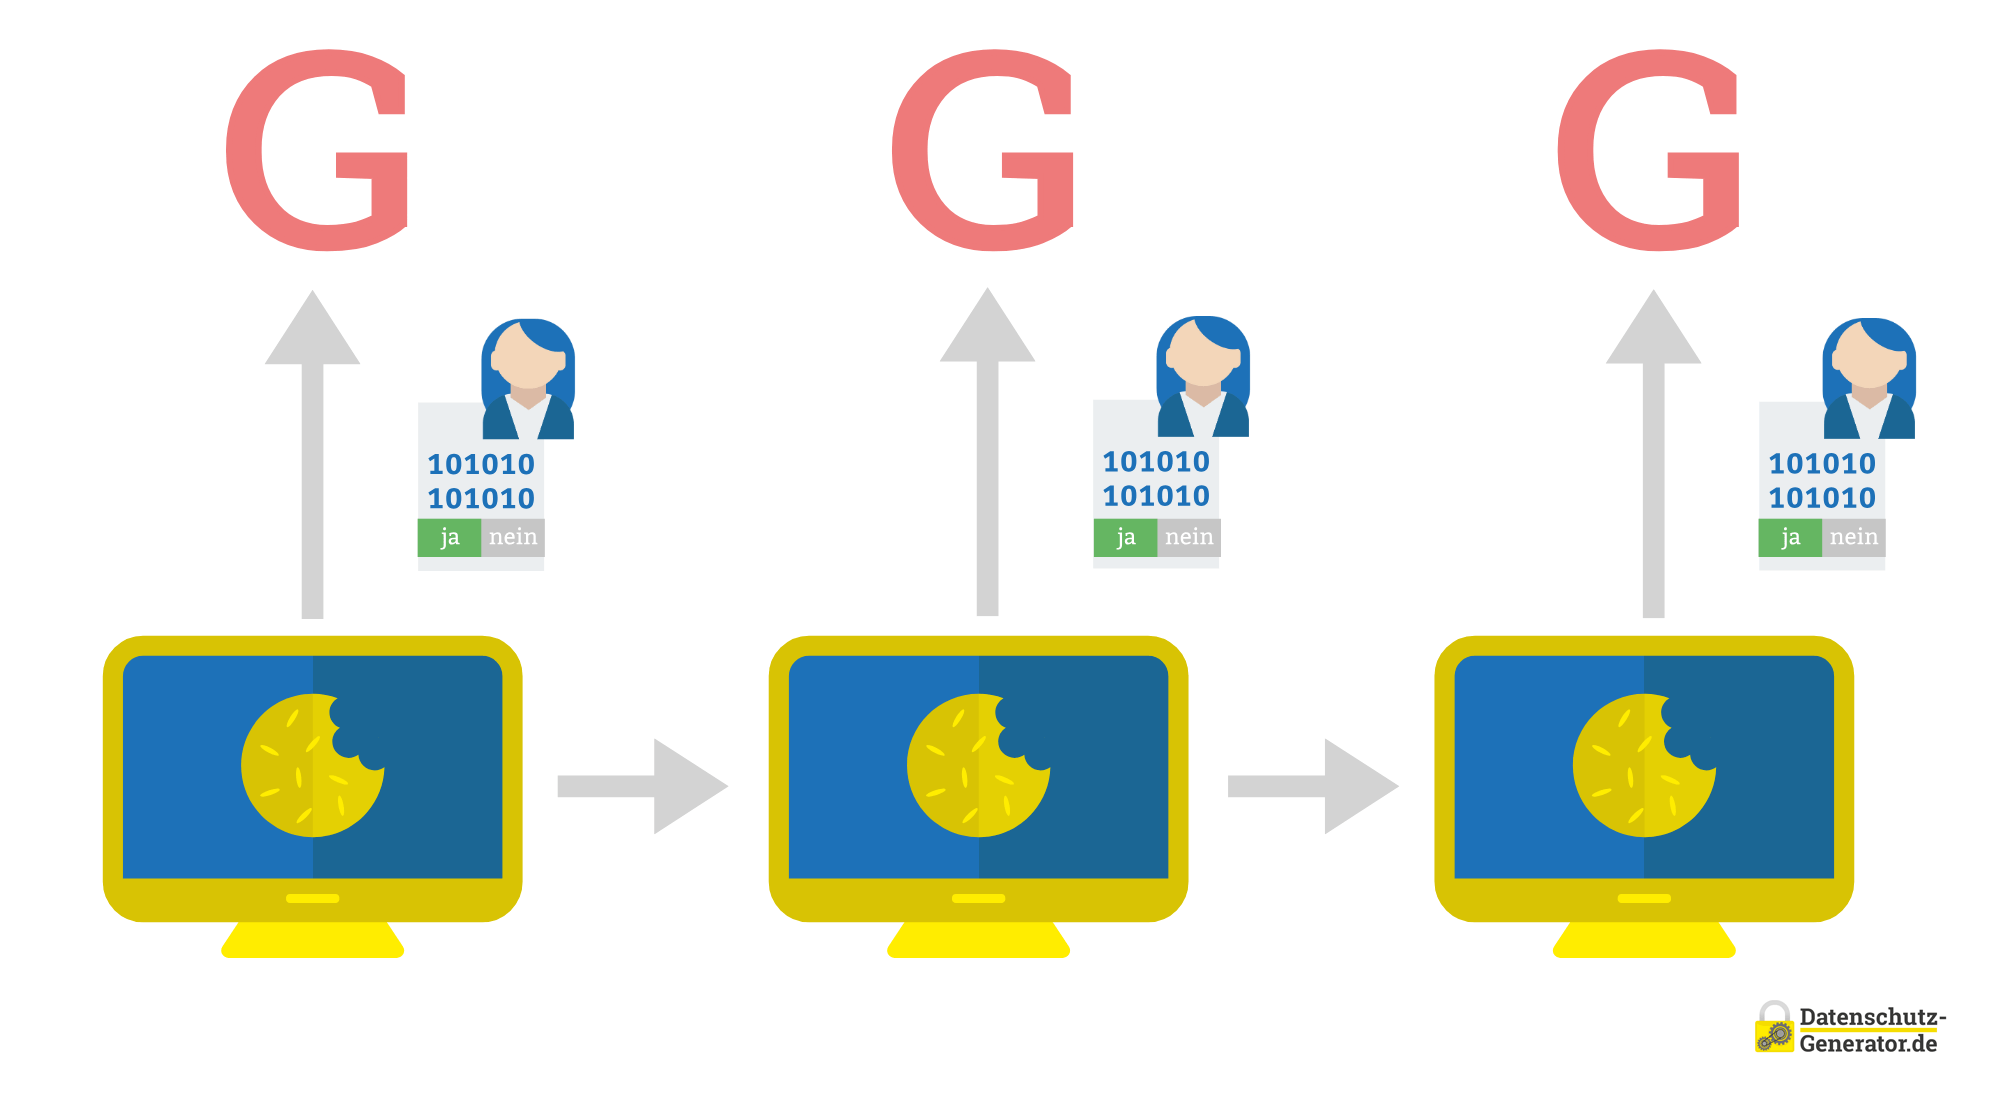 Schematische Darstellung des Consent-Modes mit Tracking, bei dem ein User-Icon mit Binärcode und Ja-Nein-Option Daten an einen Computermonitor mit einem gelben Cookie-Symbol sendet, das über drei Sequenzen konstant bleibt. 'Ja' ist blau und 'nein' rot unterlegt.